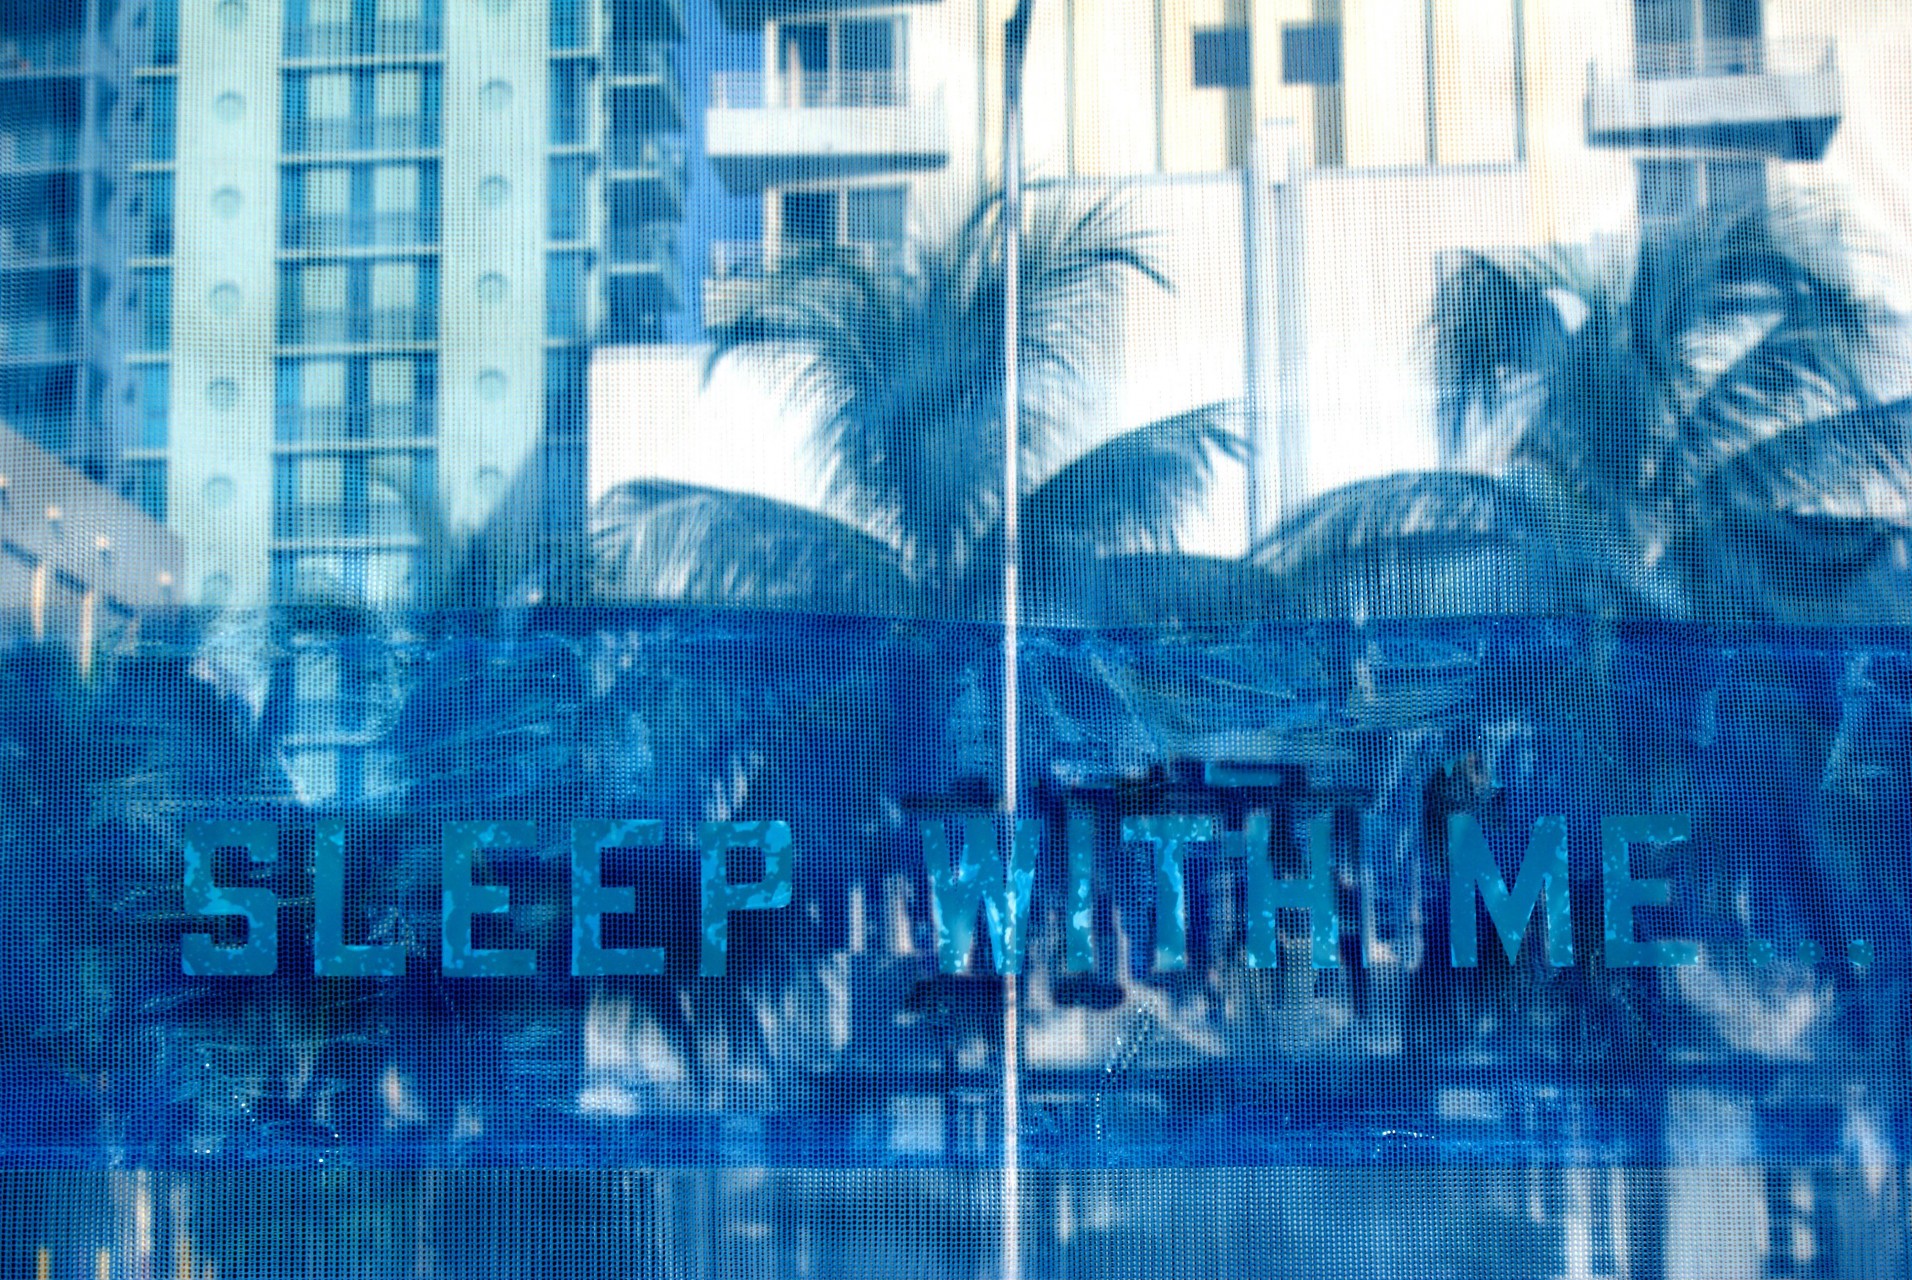 Miami - 2009